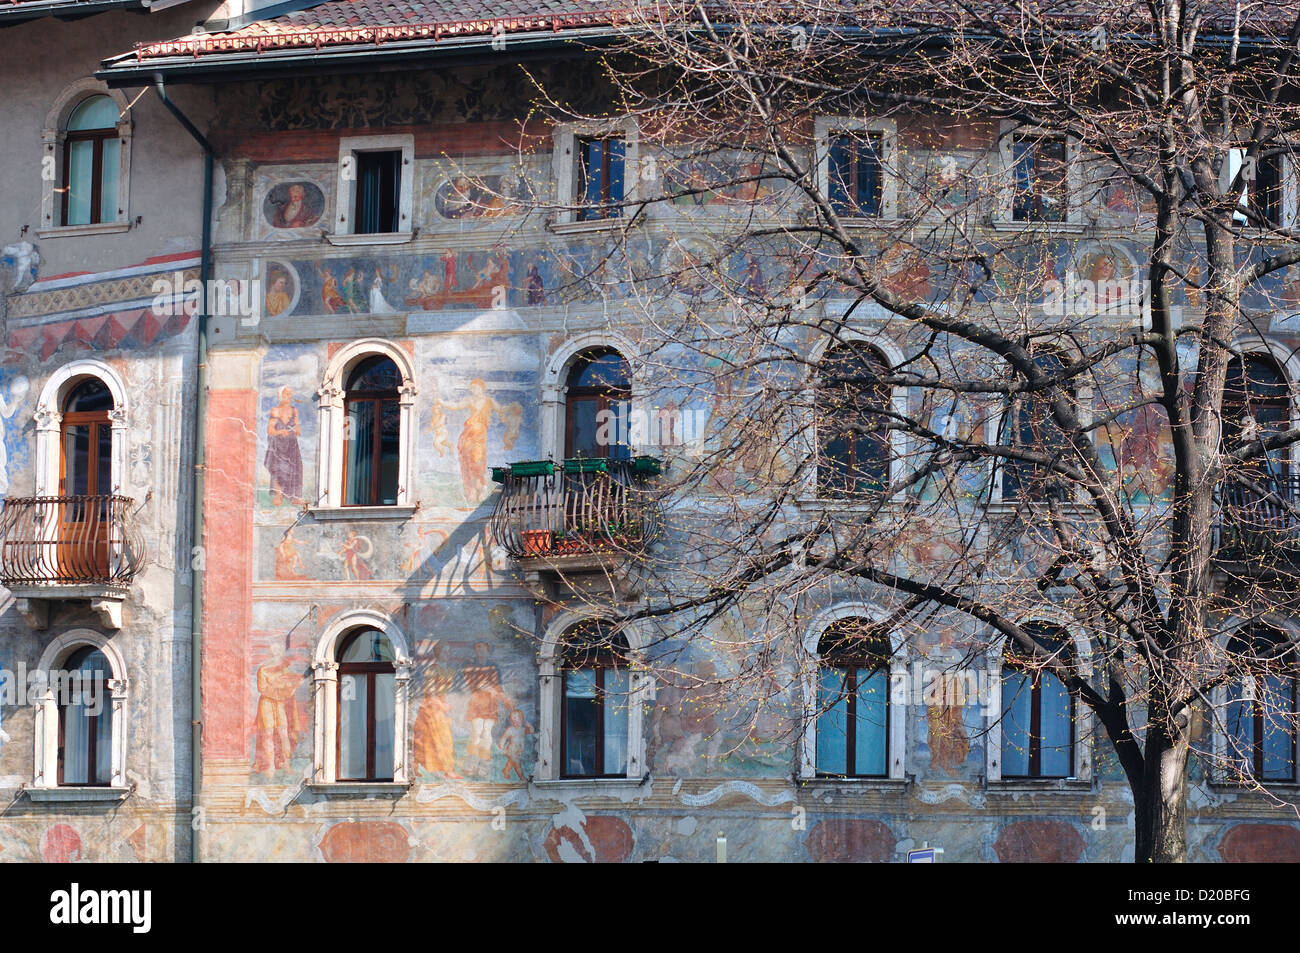 Italy, Trentino Alto Adige, Trento, Duomo Square, Casa Cazuffi-Rella Fresco by Marcello Fogolino Stock Photo